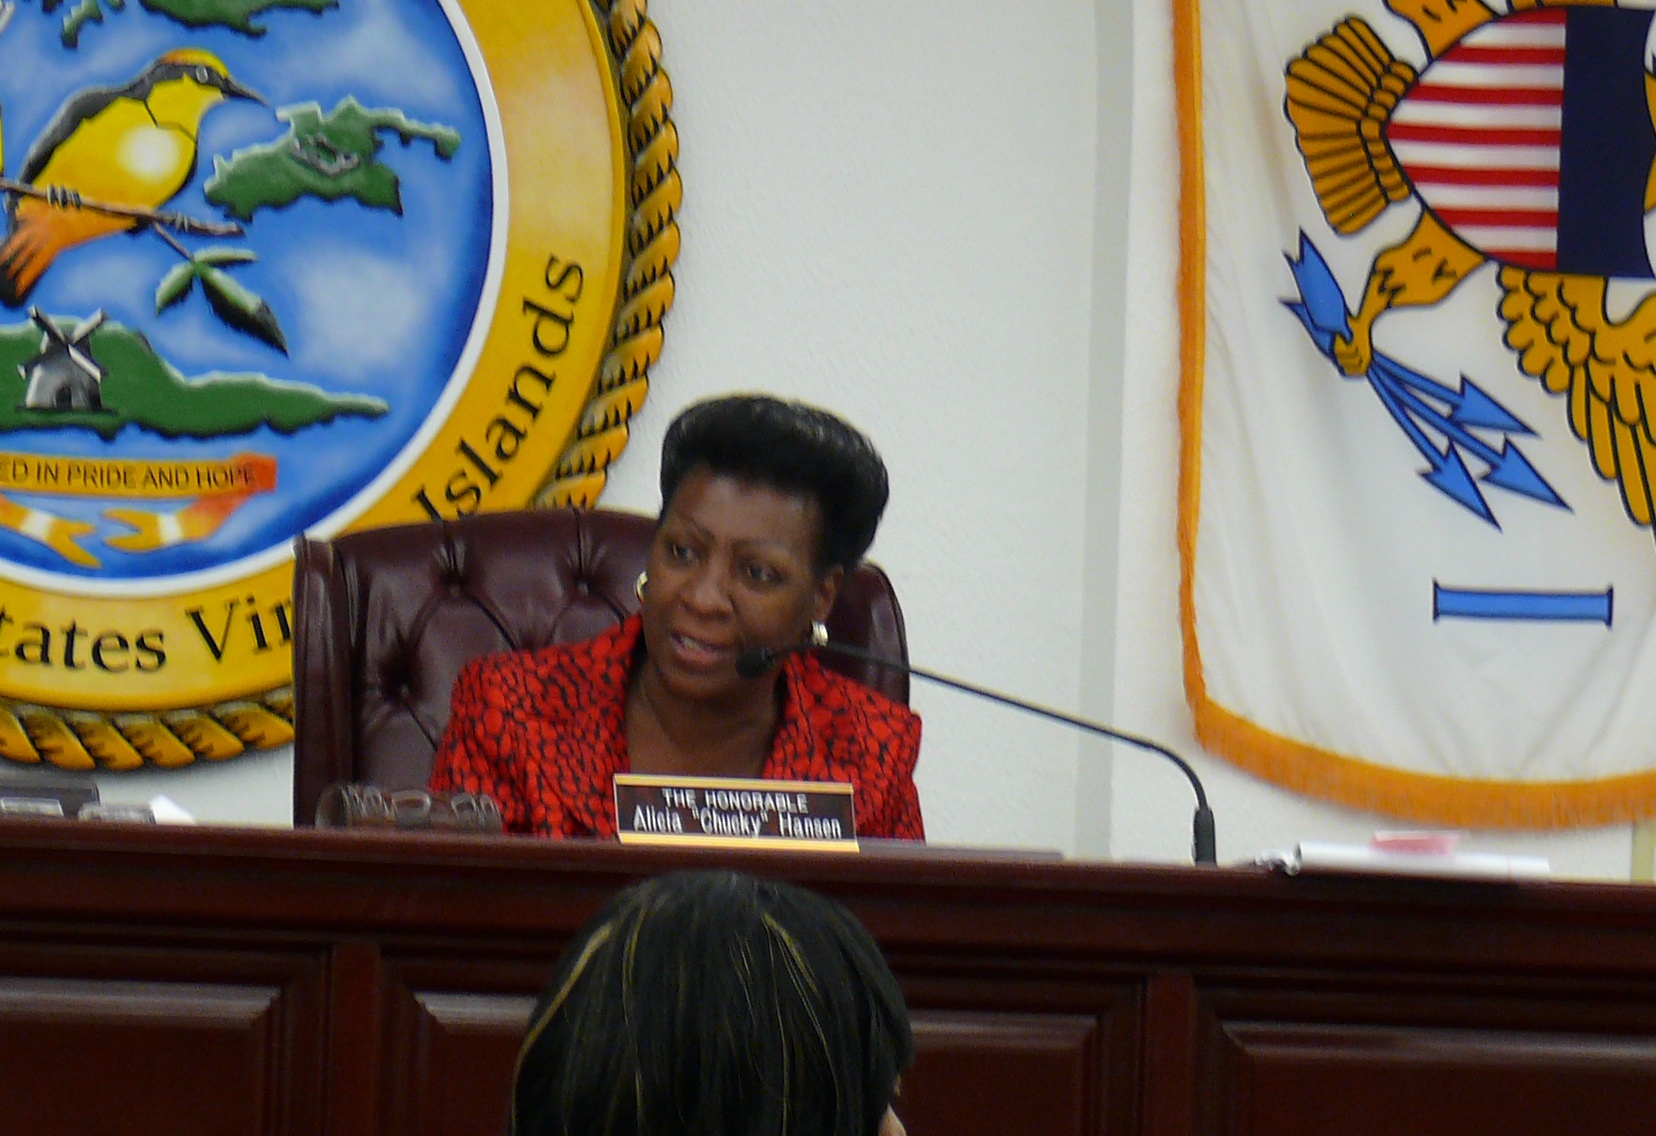 Sen. Alicia "Chucky" Hansen chairing a committee hearing Wednesday.